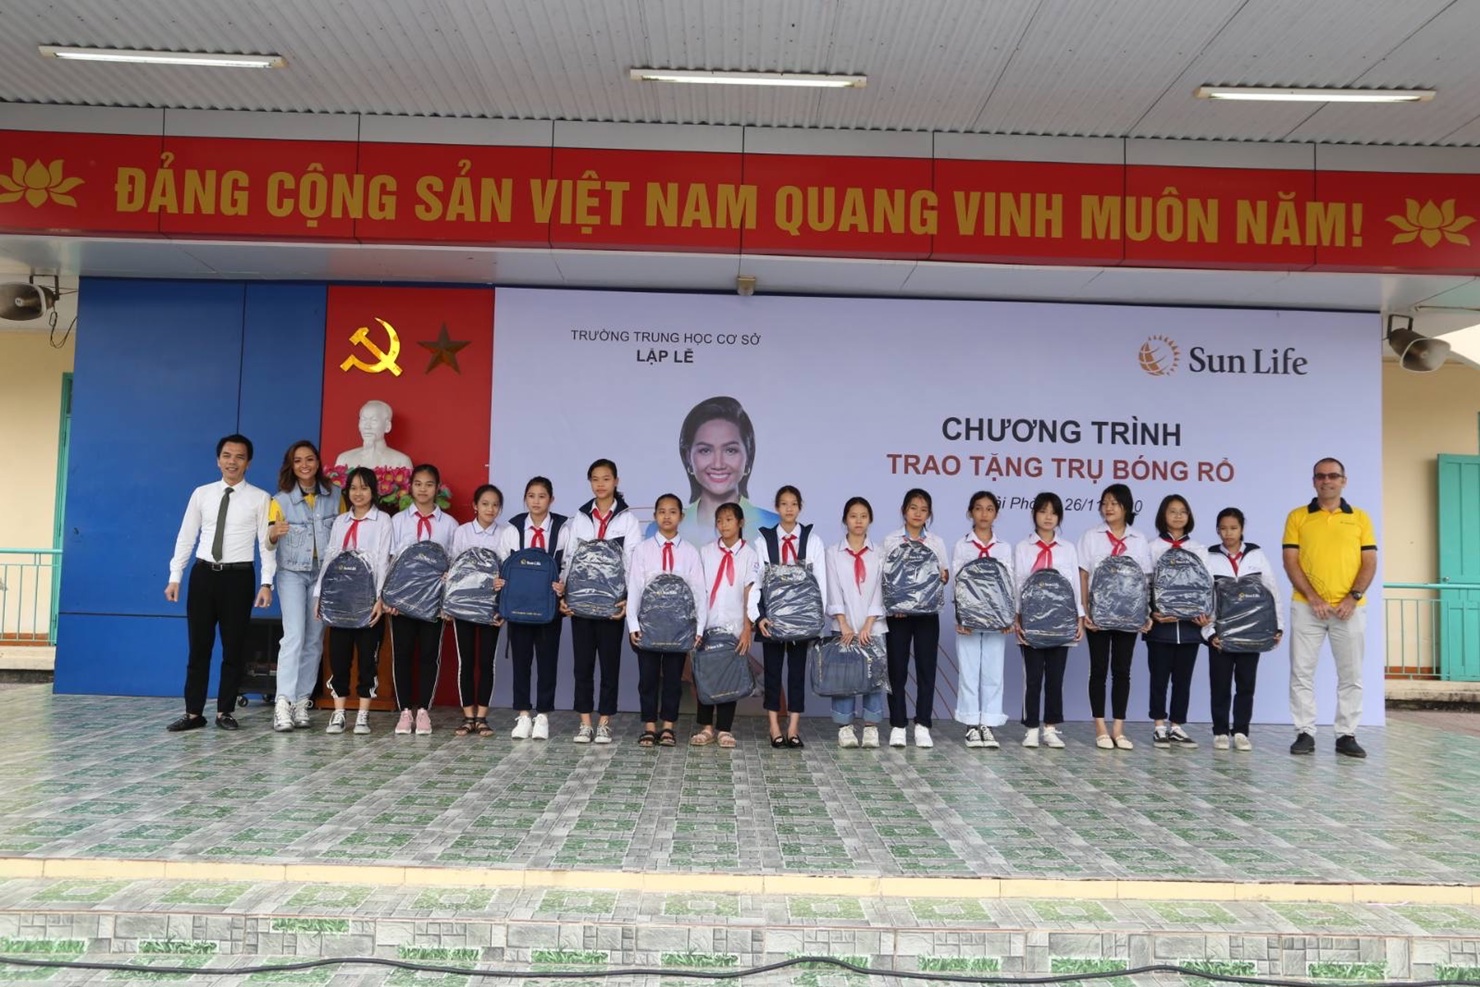 Tổng Giám đốc Sun Life Việt Nam Larry Madge và hoa hậu H’Hen Niê - Đại sứ thương hiệu Sun Life Việt Nam đã trao tặng trụ bóng rổ và quà tặng cho các em học sinh trường THCS Lập Lễ (Hải Phòng).